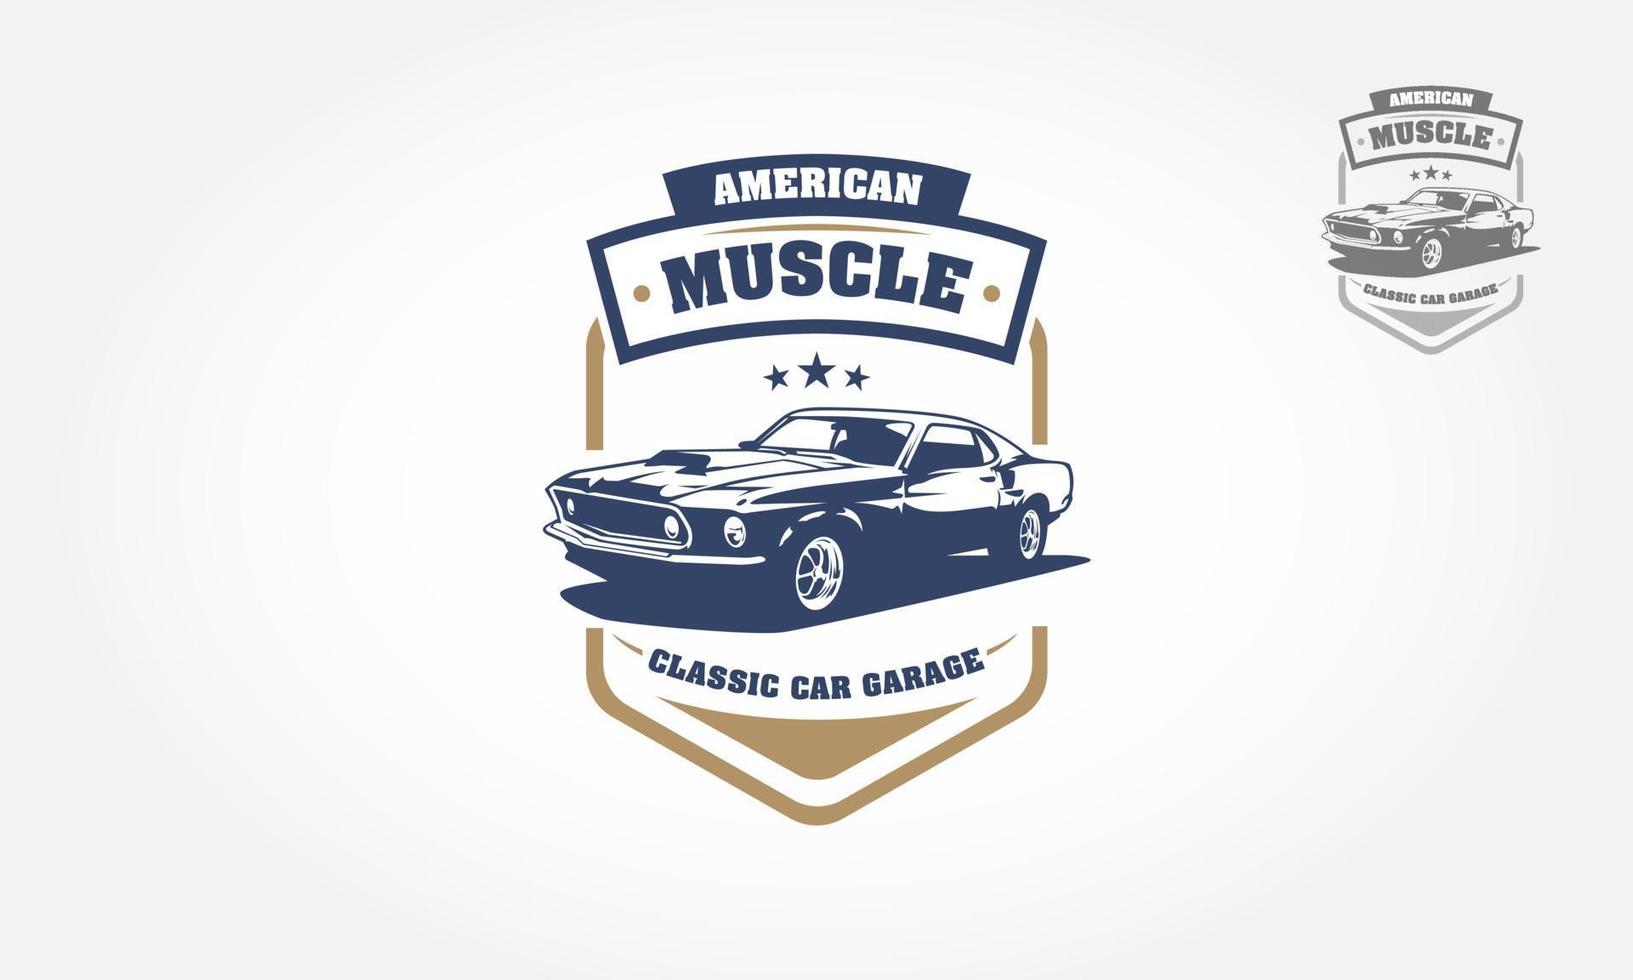 American muscle classic car garage logo design. denna logotyp kan användas för gammal stil eller klassisk bilgarage, butiker, reparationer, restaureringar. vektor